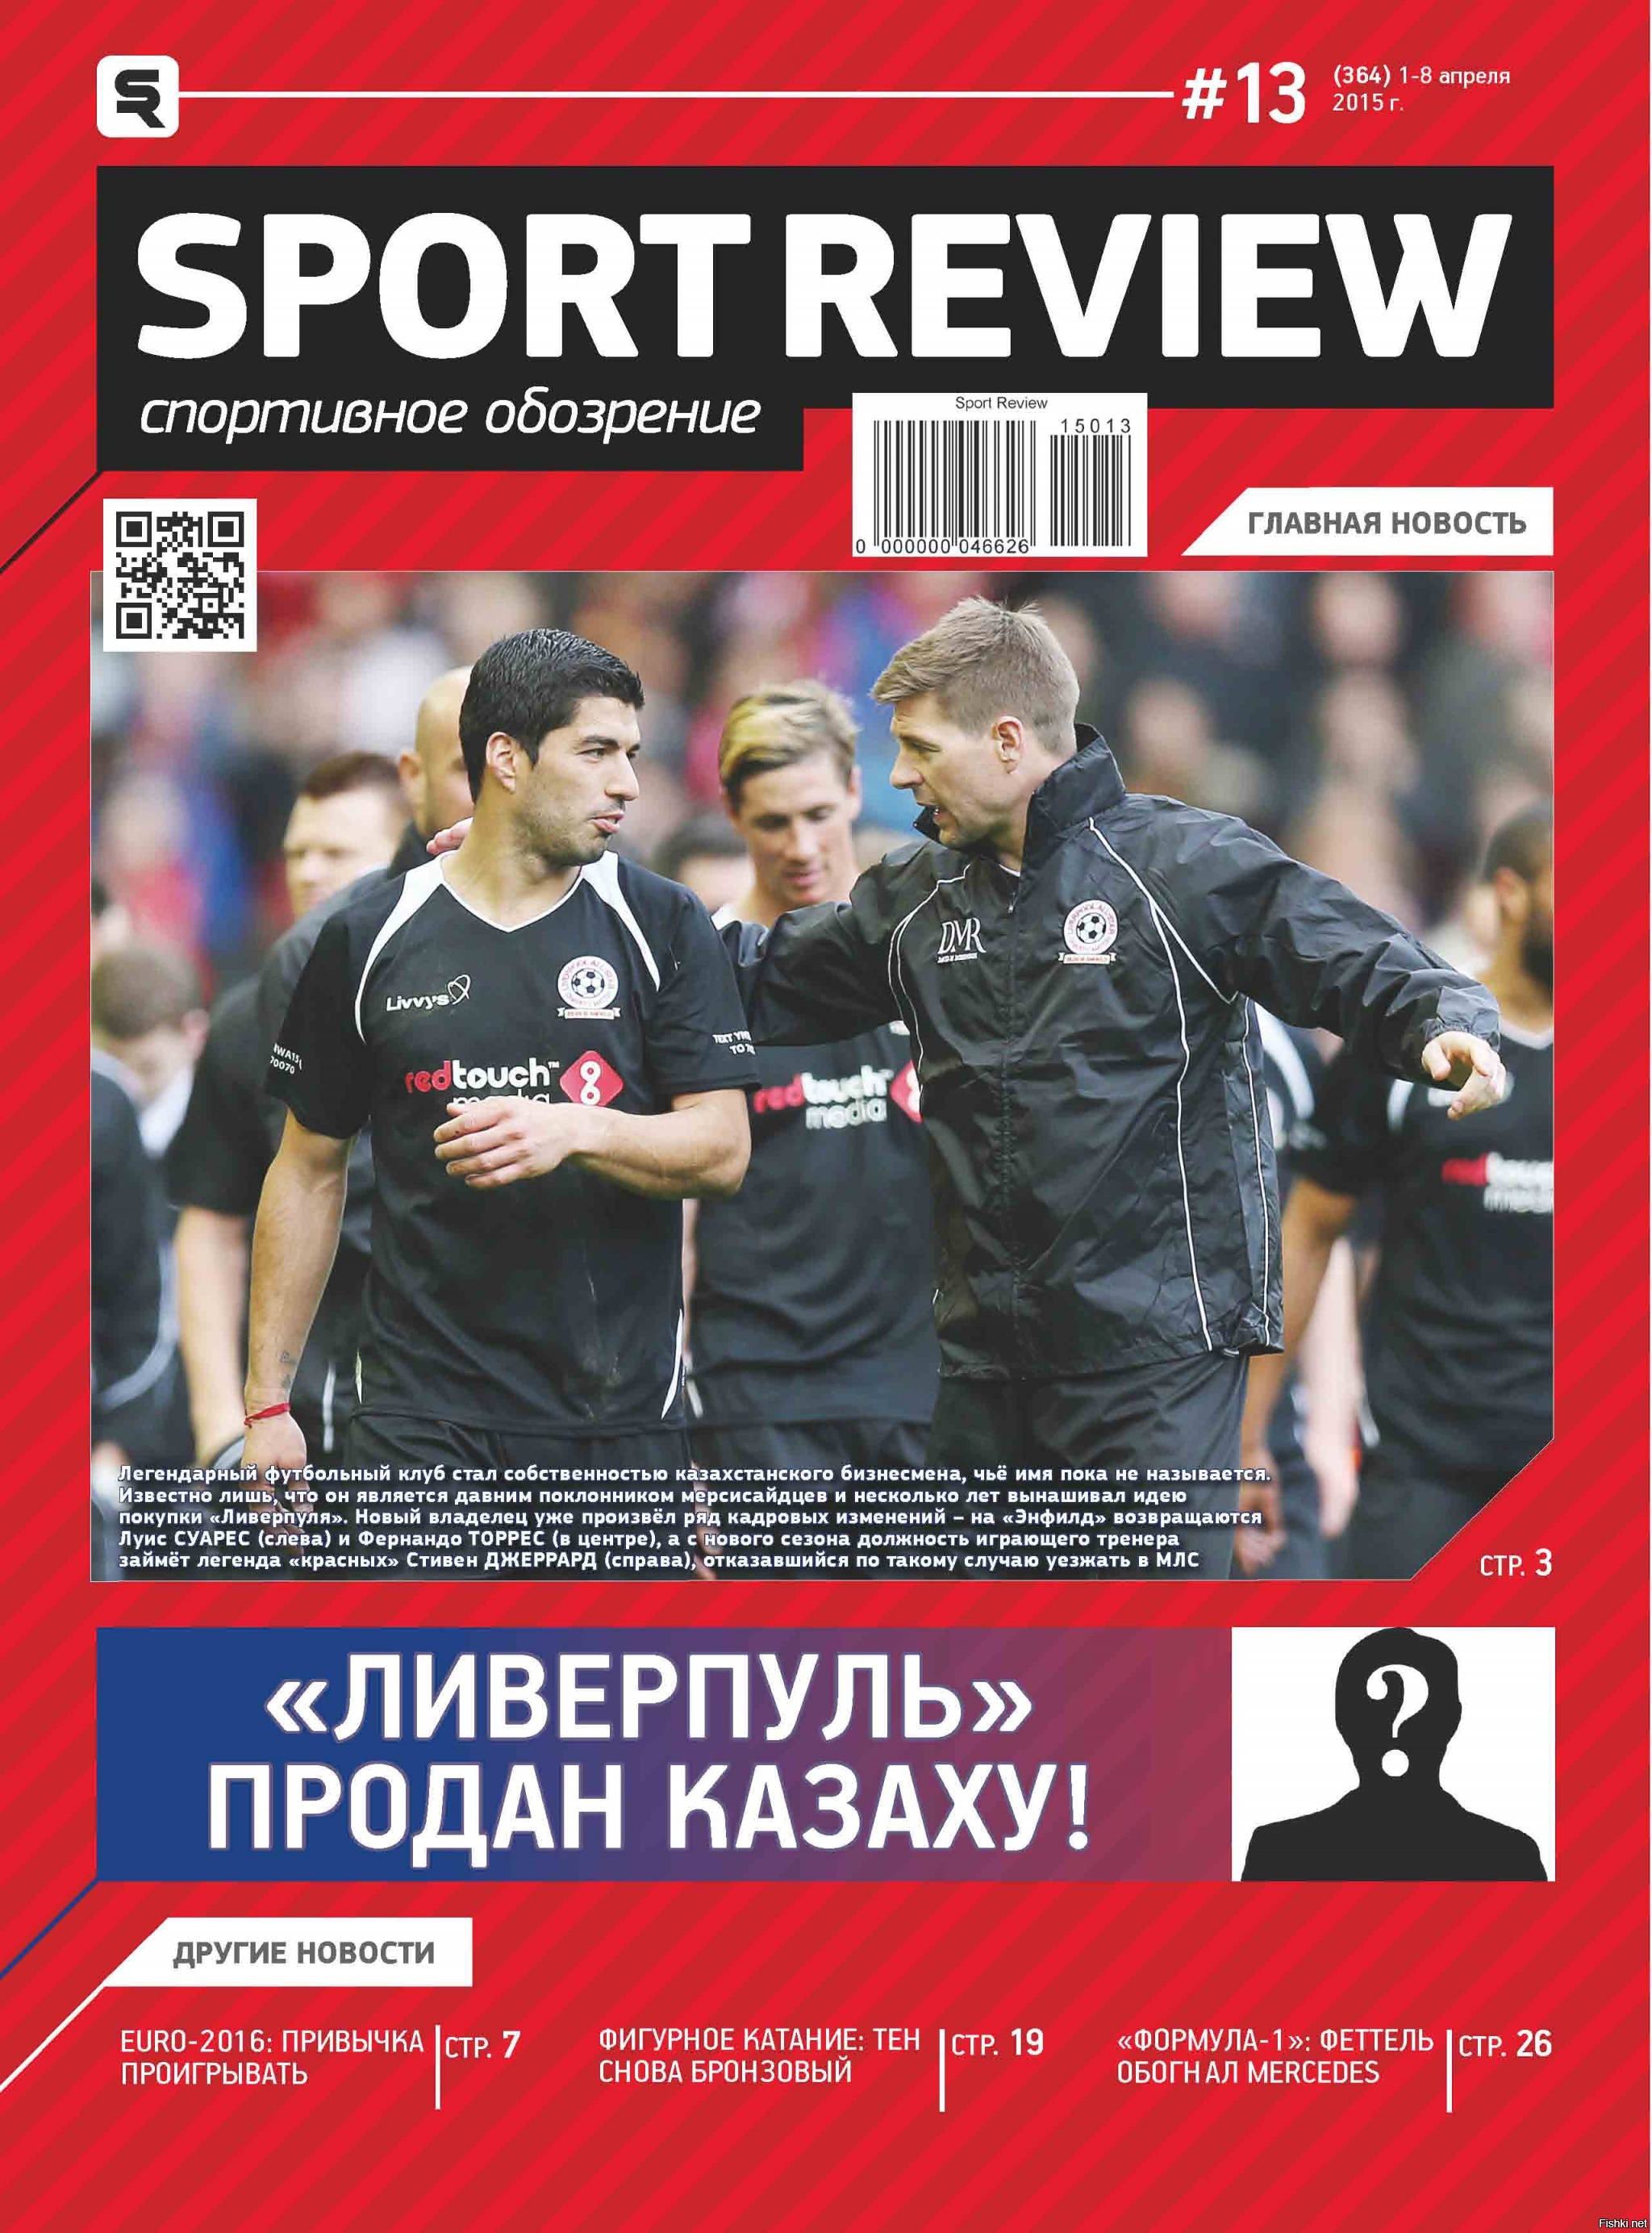 Вот с таким заголовком вышел очередной номер спортивного журнала в Казахстане